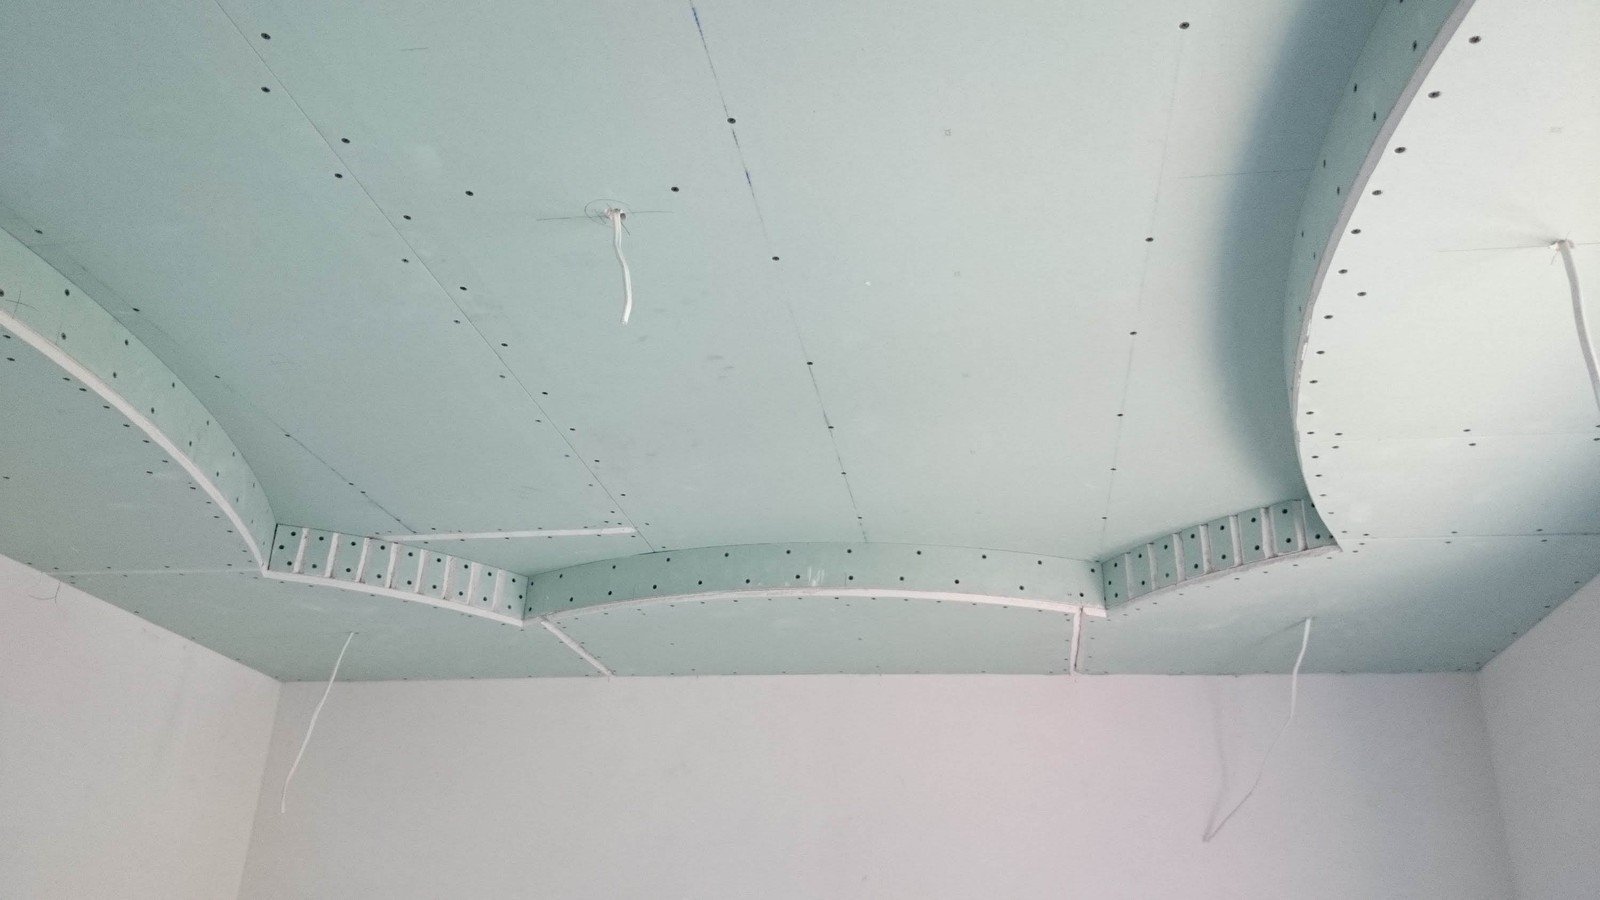 Многоуровневые потолки из гипсокартона